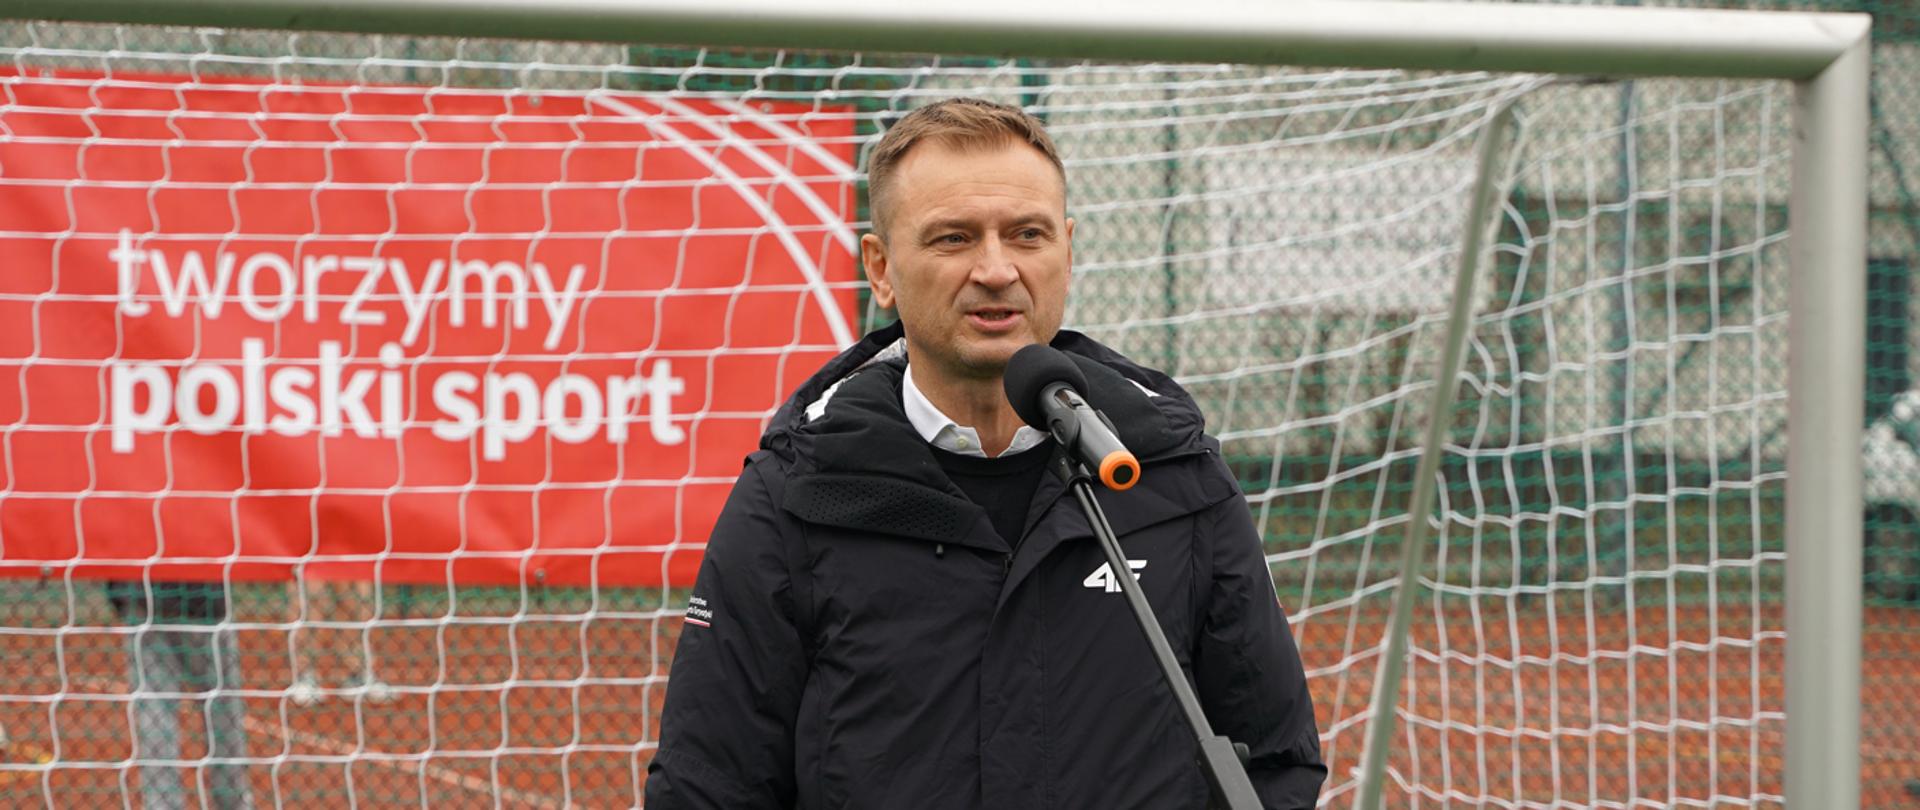 Podsumowanie 100 dni pracy Ministerstwa Sportu i Turystyki - na zdjęciu minister Sławomir Nitras mówi do stojącego przed nim mikrofonu, w tle bramka do piłki nożnej i baner z napisem "tworzymy polski sport"